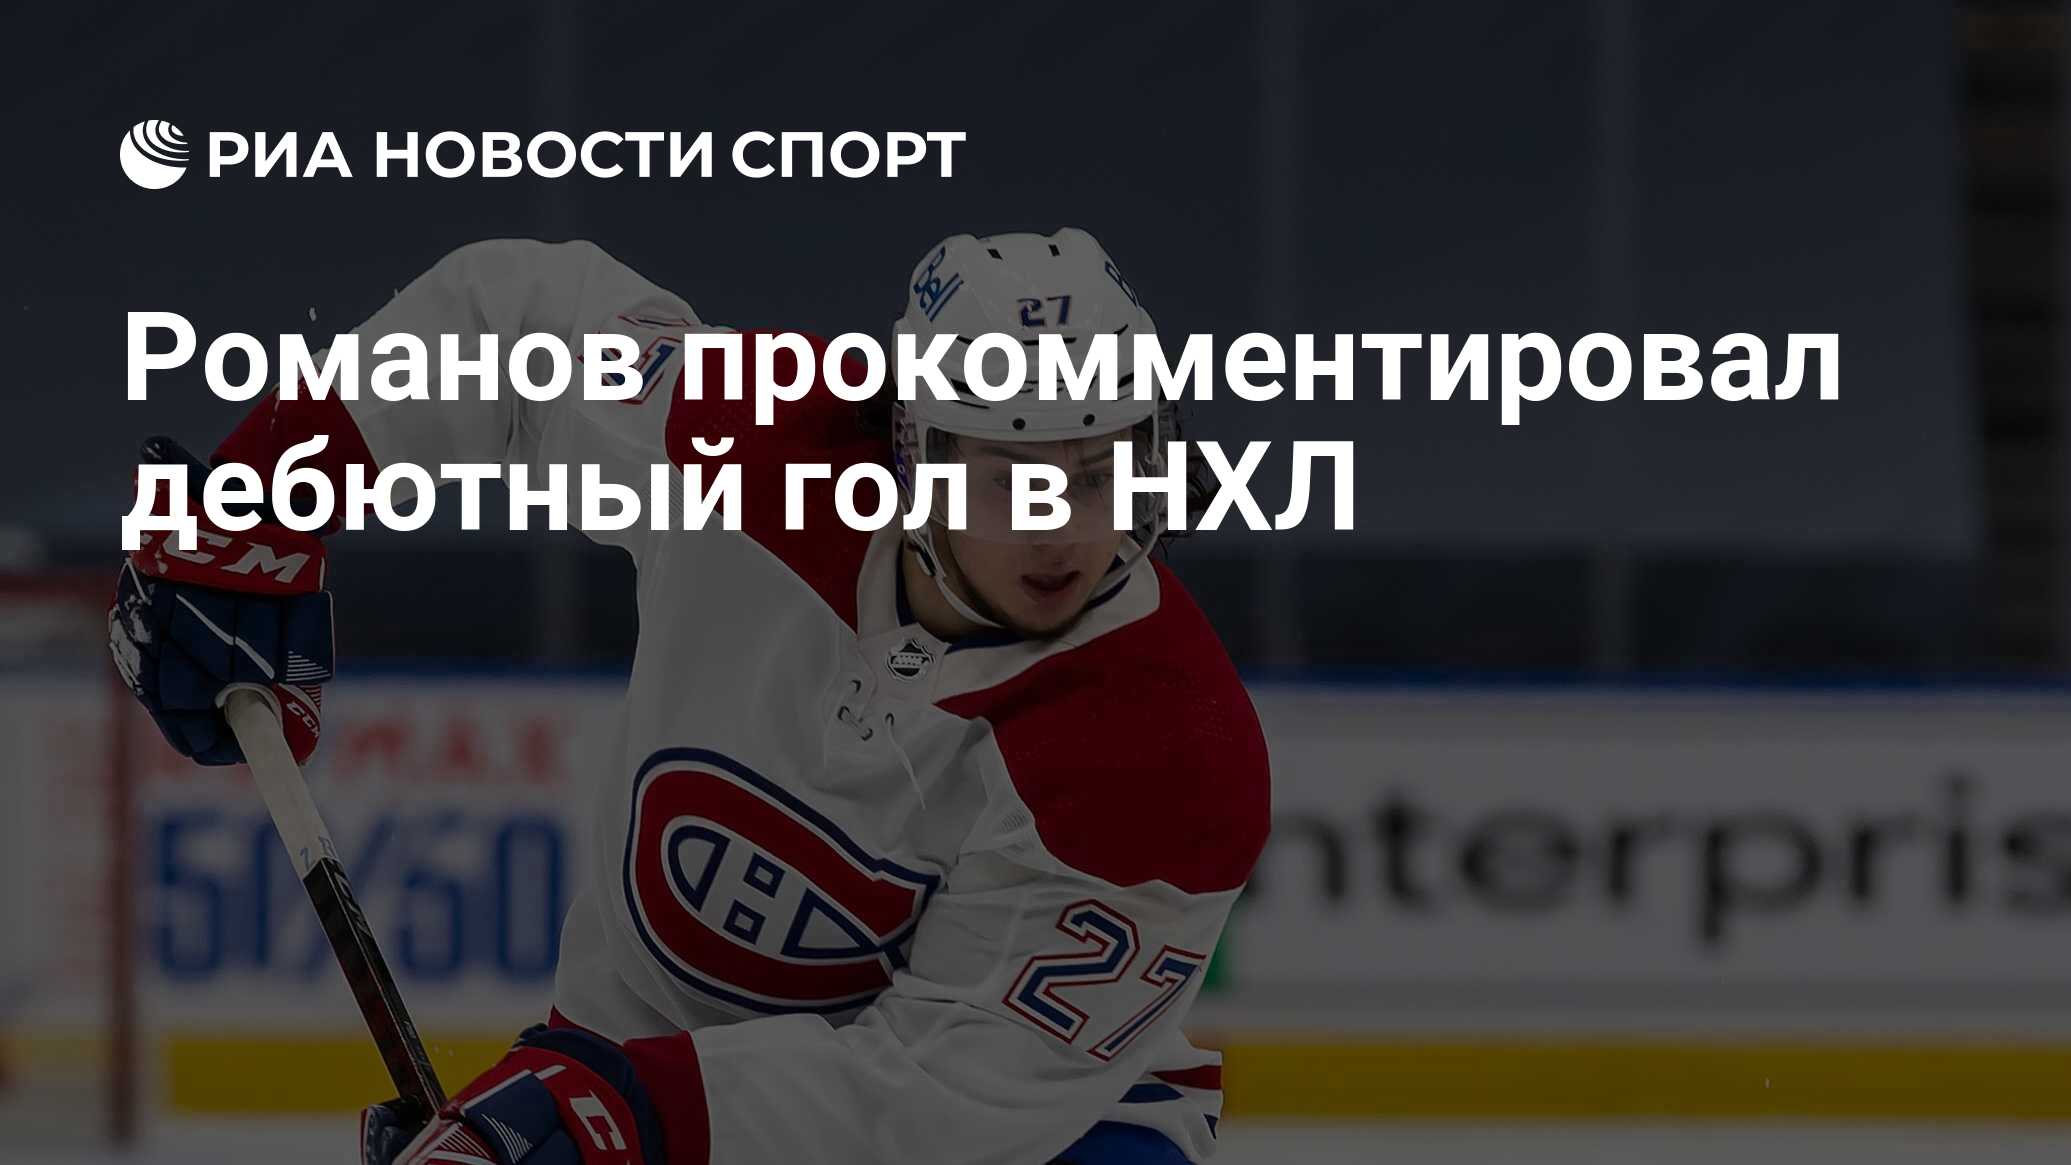 Романов прокомментировал дебютный гол в НХЛ - РИА Новости Спорт, 19.01.2021